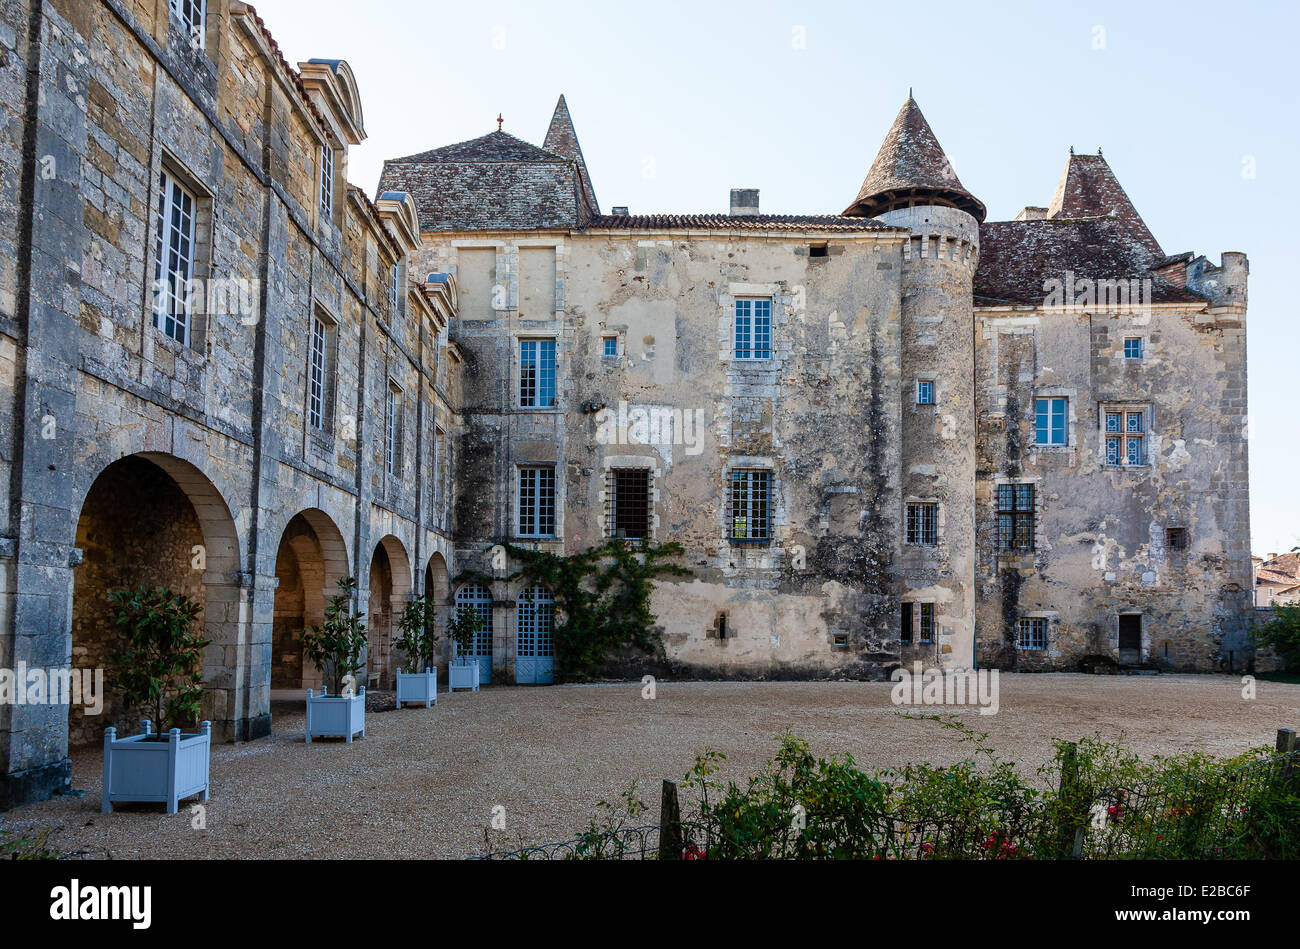 France, Dordogne, Perigord Vert, Saint Jean de Cole, labelled The Most Beautiful Villages of France, castle Stock Photo